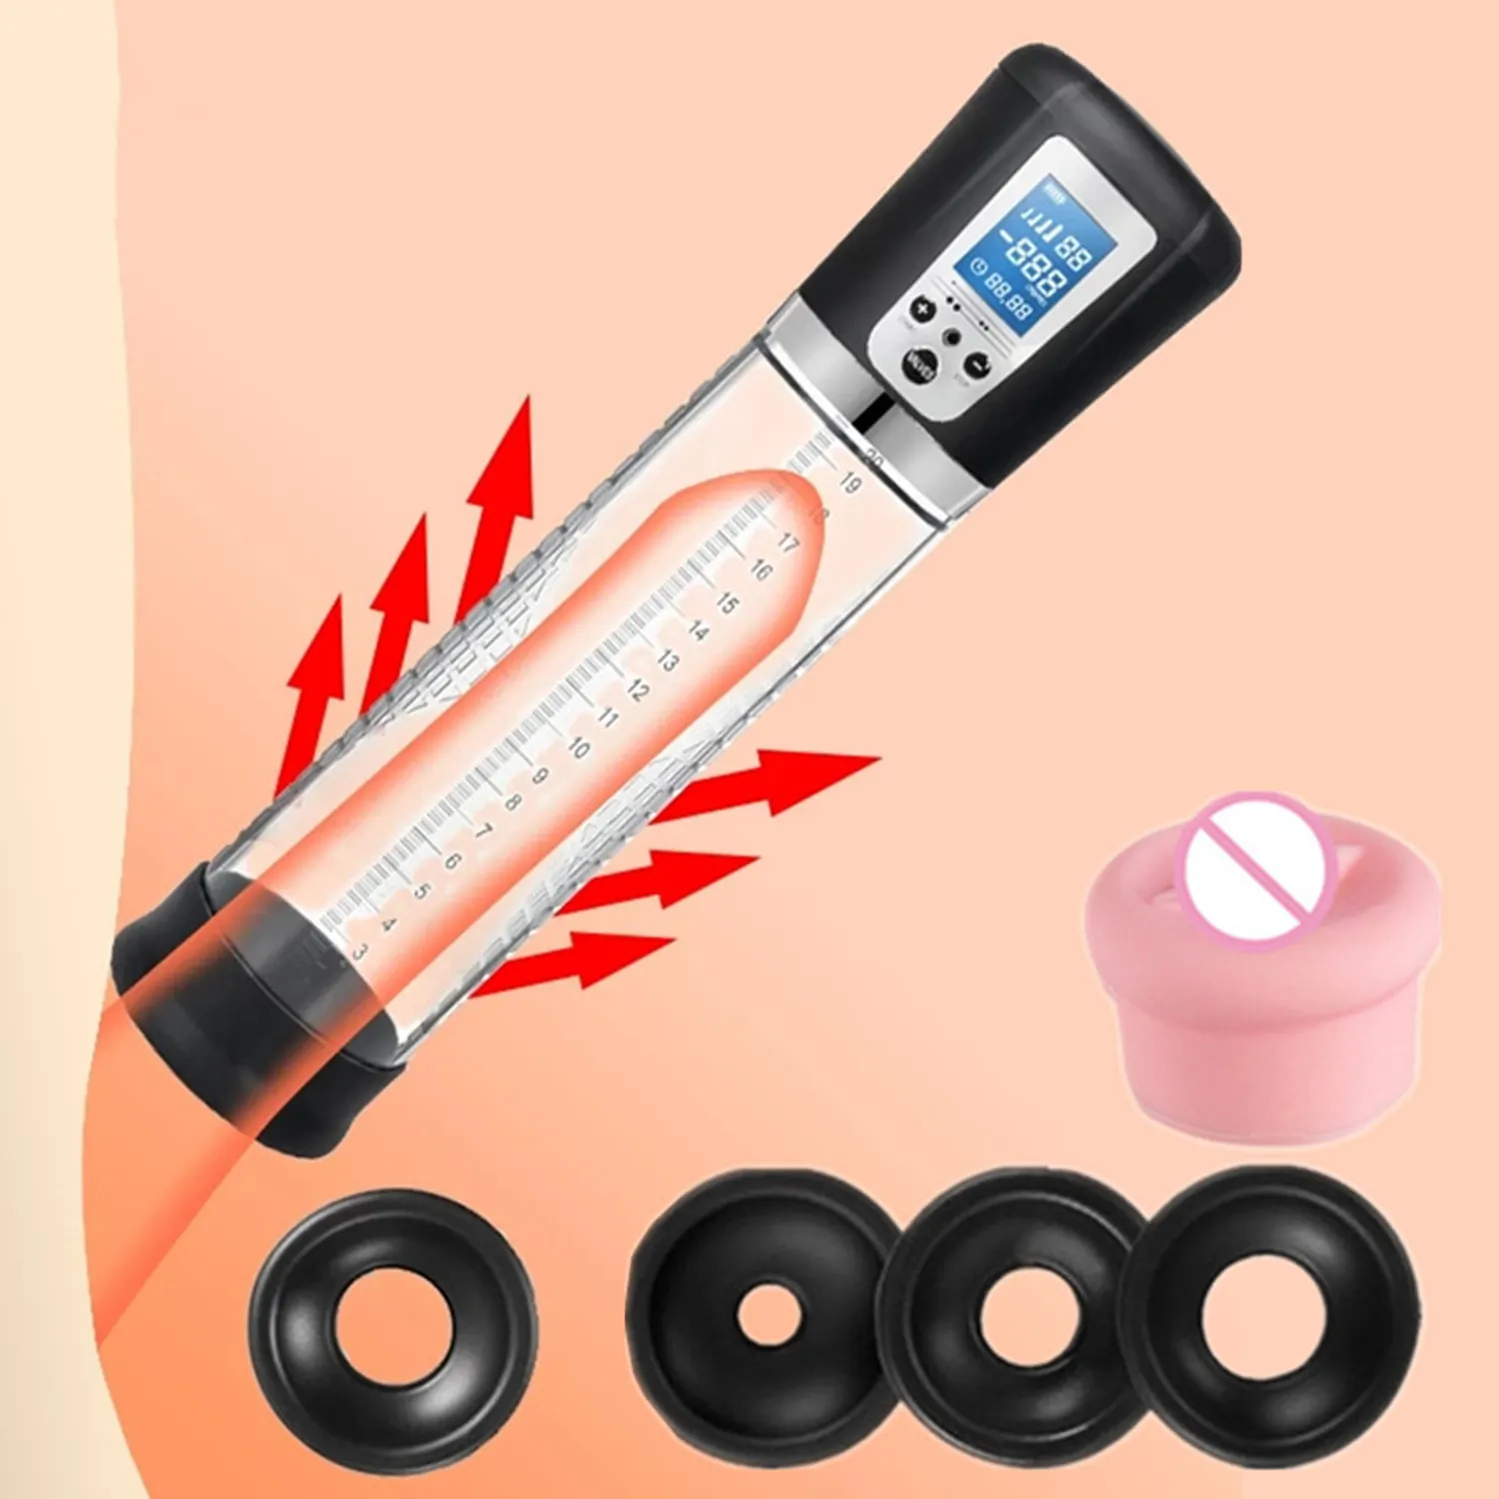 Pompa panis di vendita calda massaggio in silicone morbido dick maschio ingranditori elettrico altri prodotti del sesso ingrandimento del pene